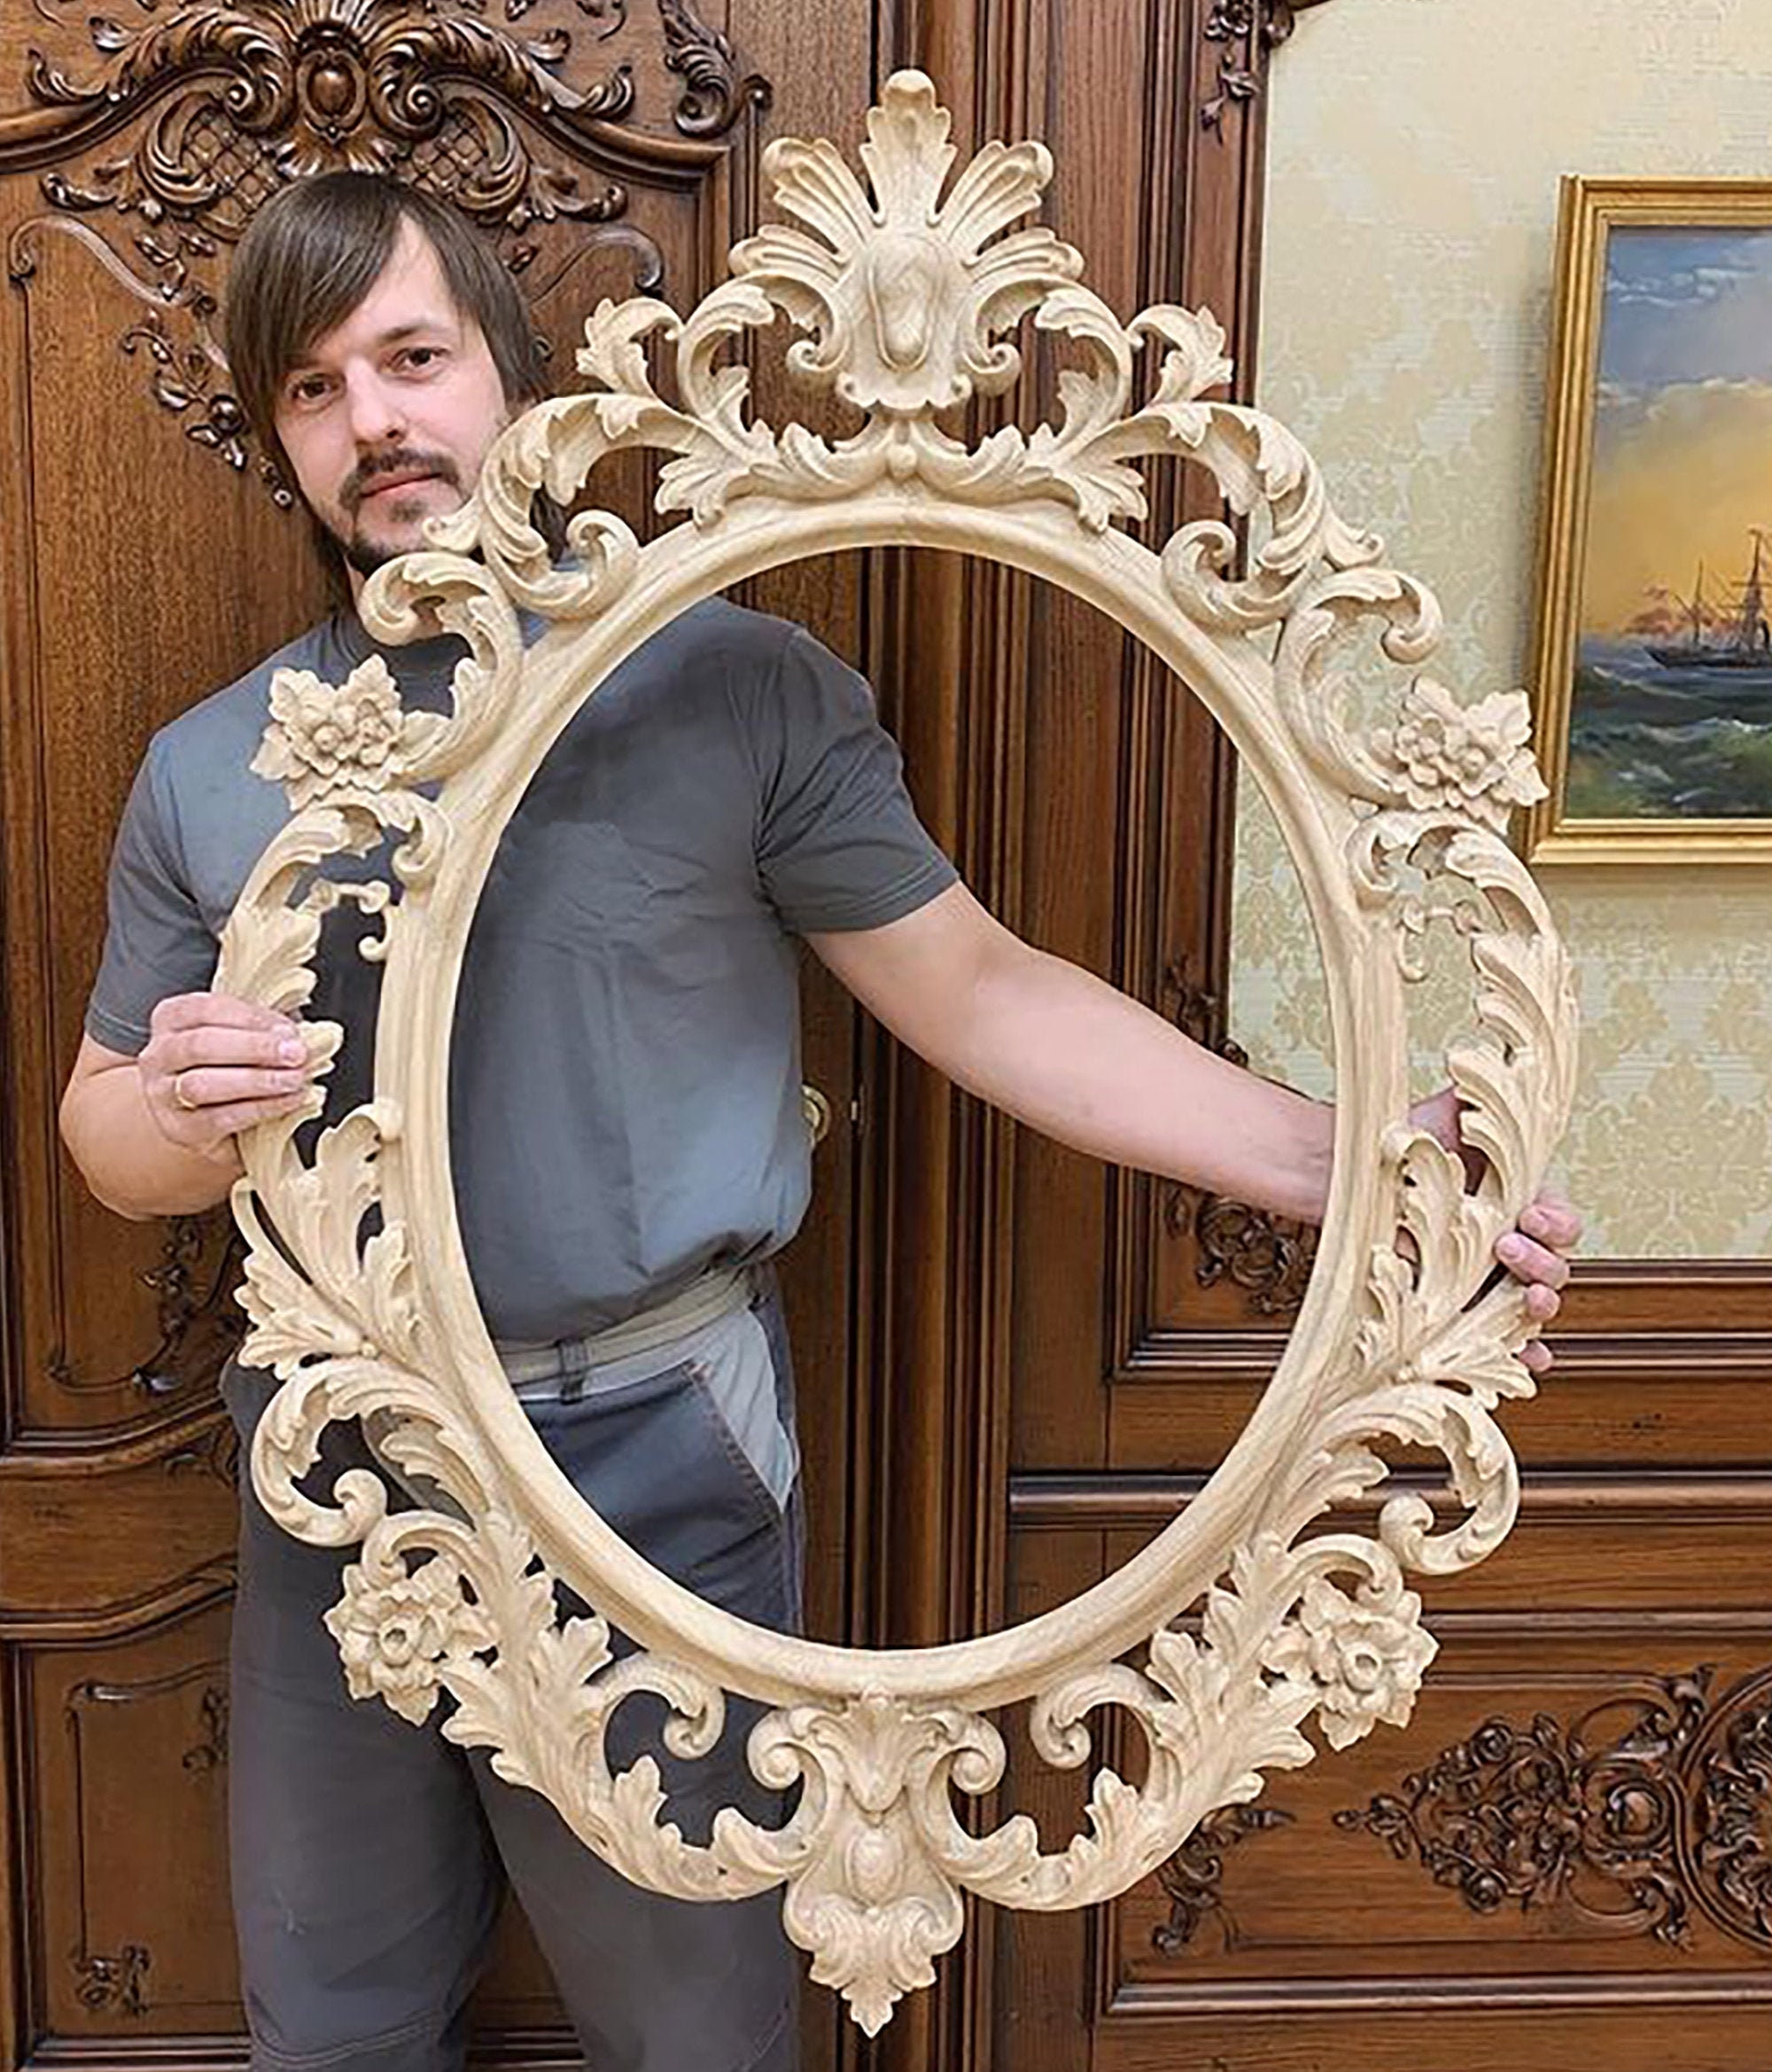 Espejo Oval con Marco de Madera Perforada Decorado en Pan de Oro